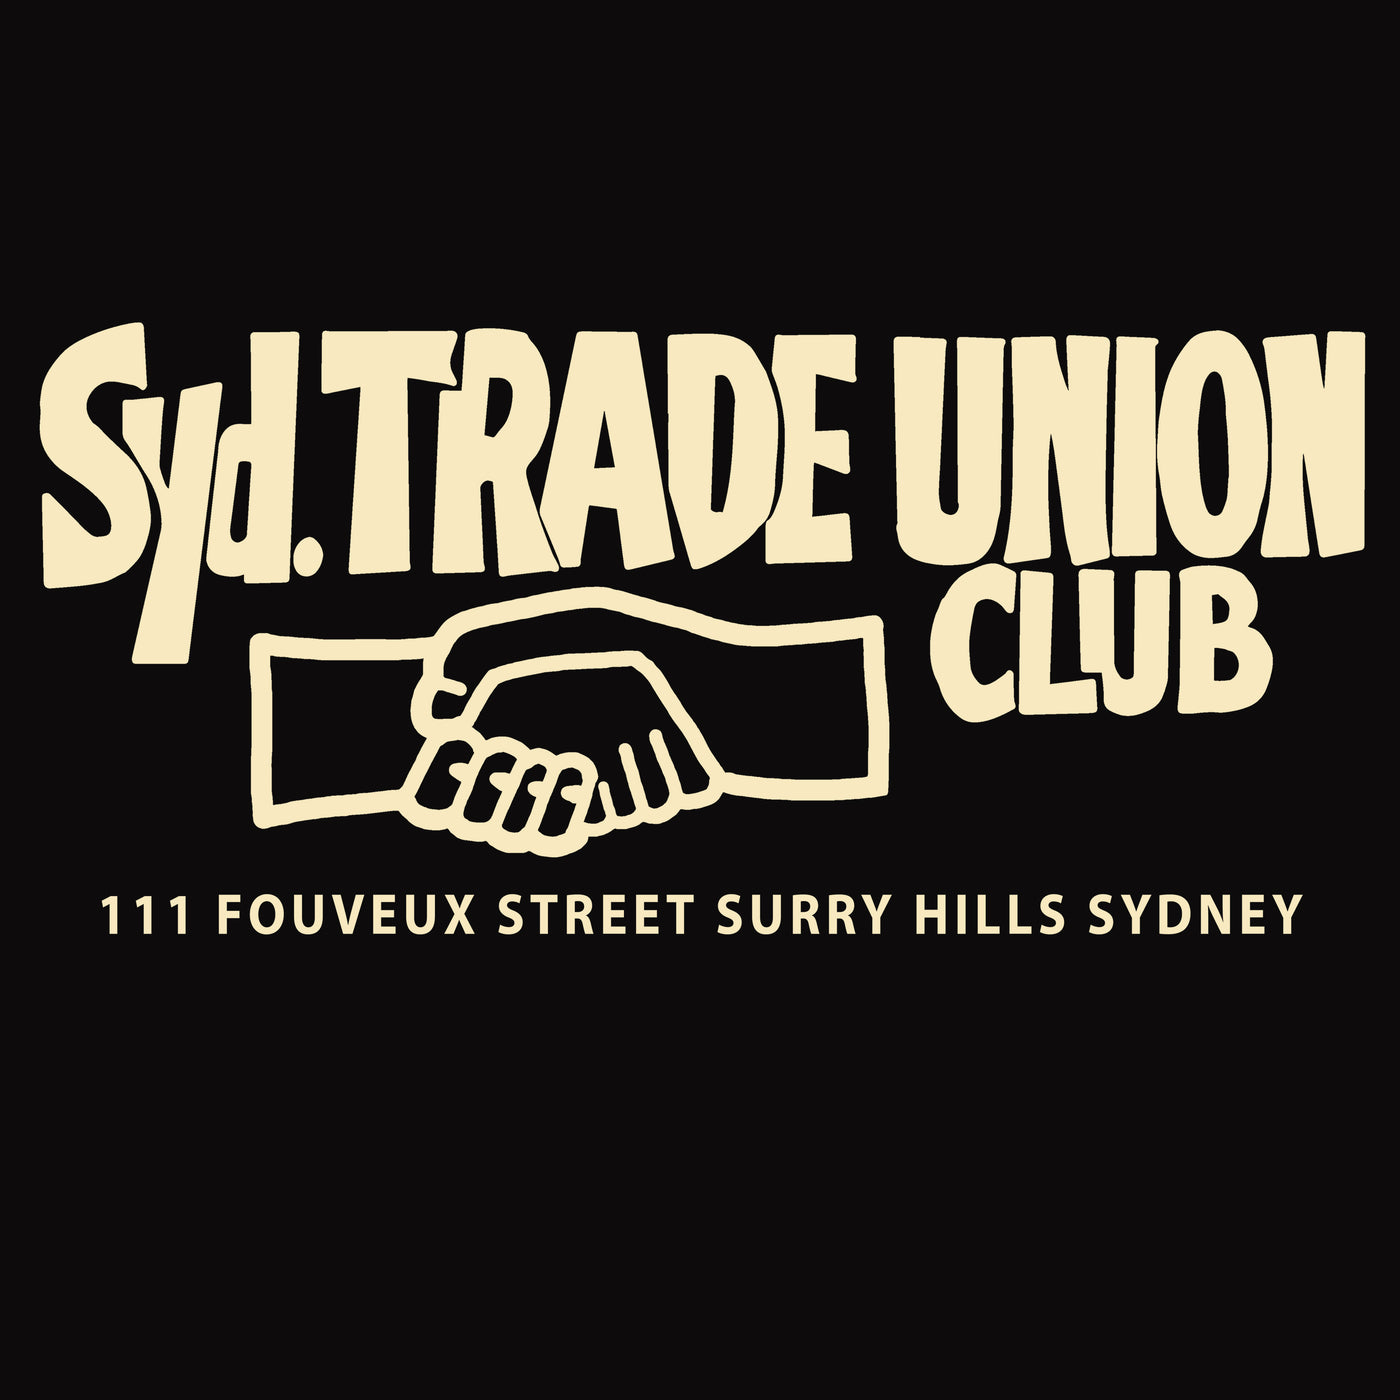 Sydney Trade Union Club